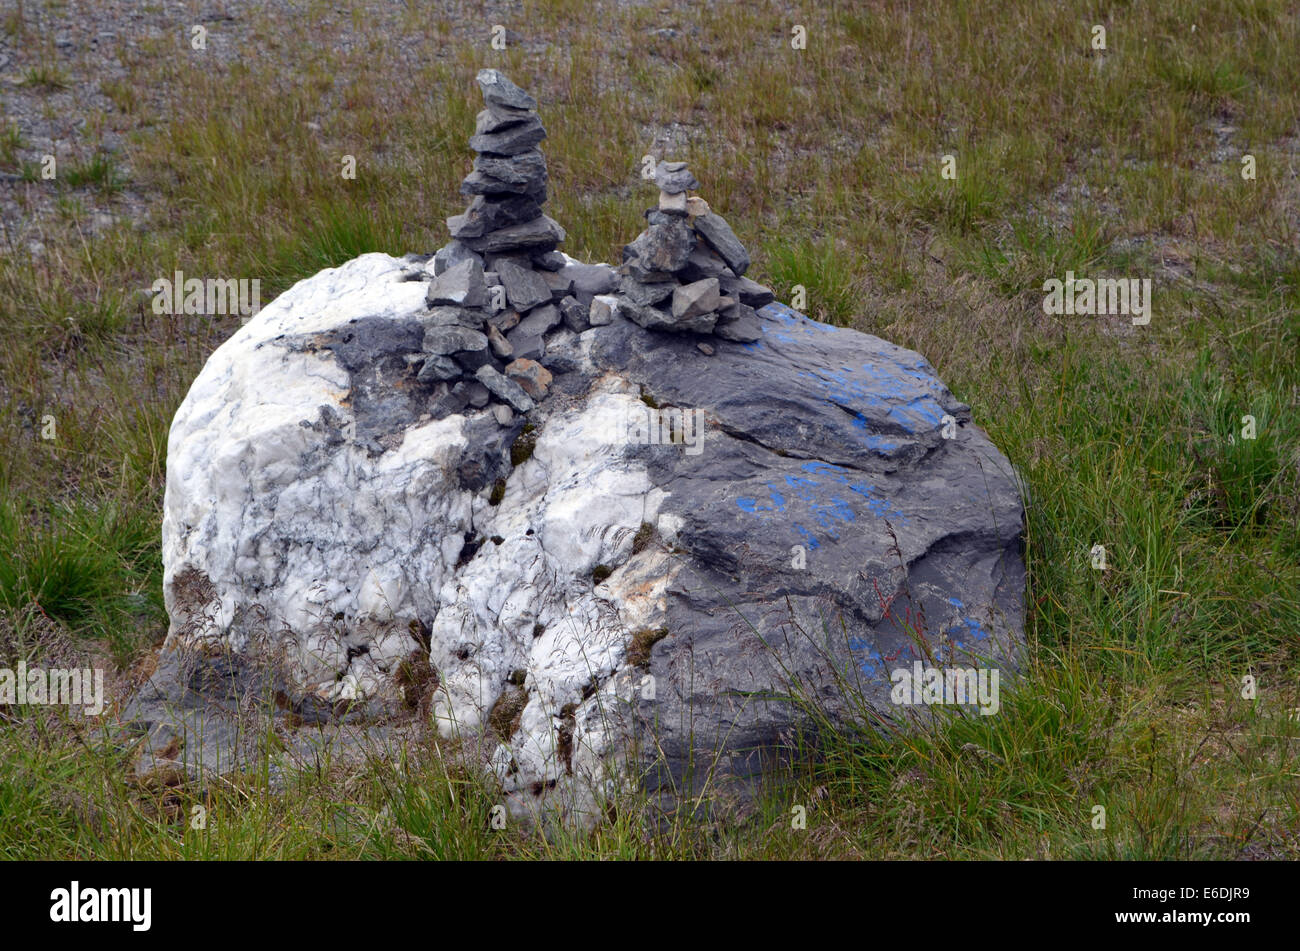 Un misterioso montón de piedras, obviamente construido a mano que parece ser una tradición sami. Se encuentran por todo el lugar. Foto de stock